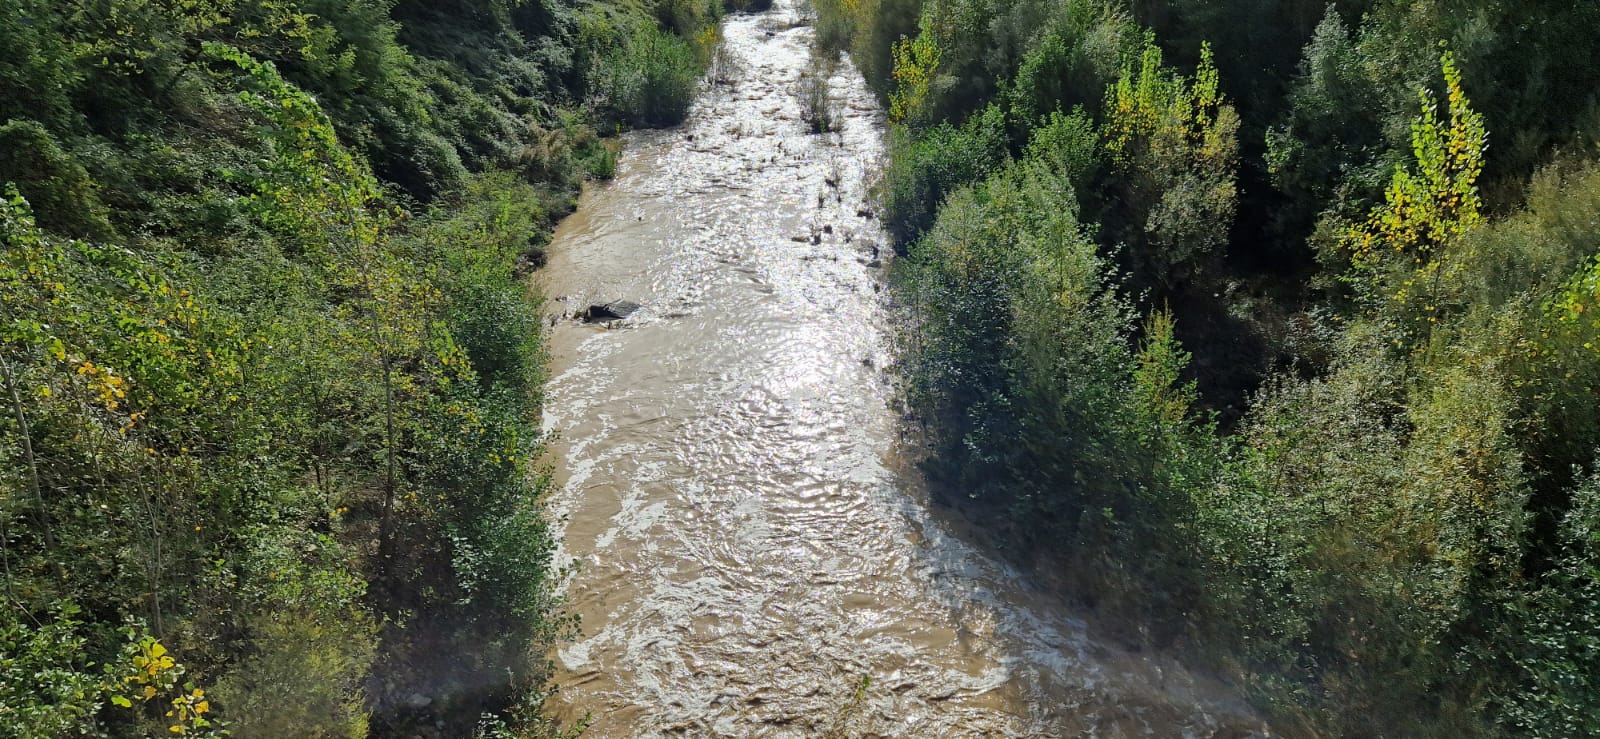 Consorzio di bonifica ripristina fiumi Arbia e Orcia colpiti da piogge intense - Siena News